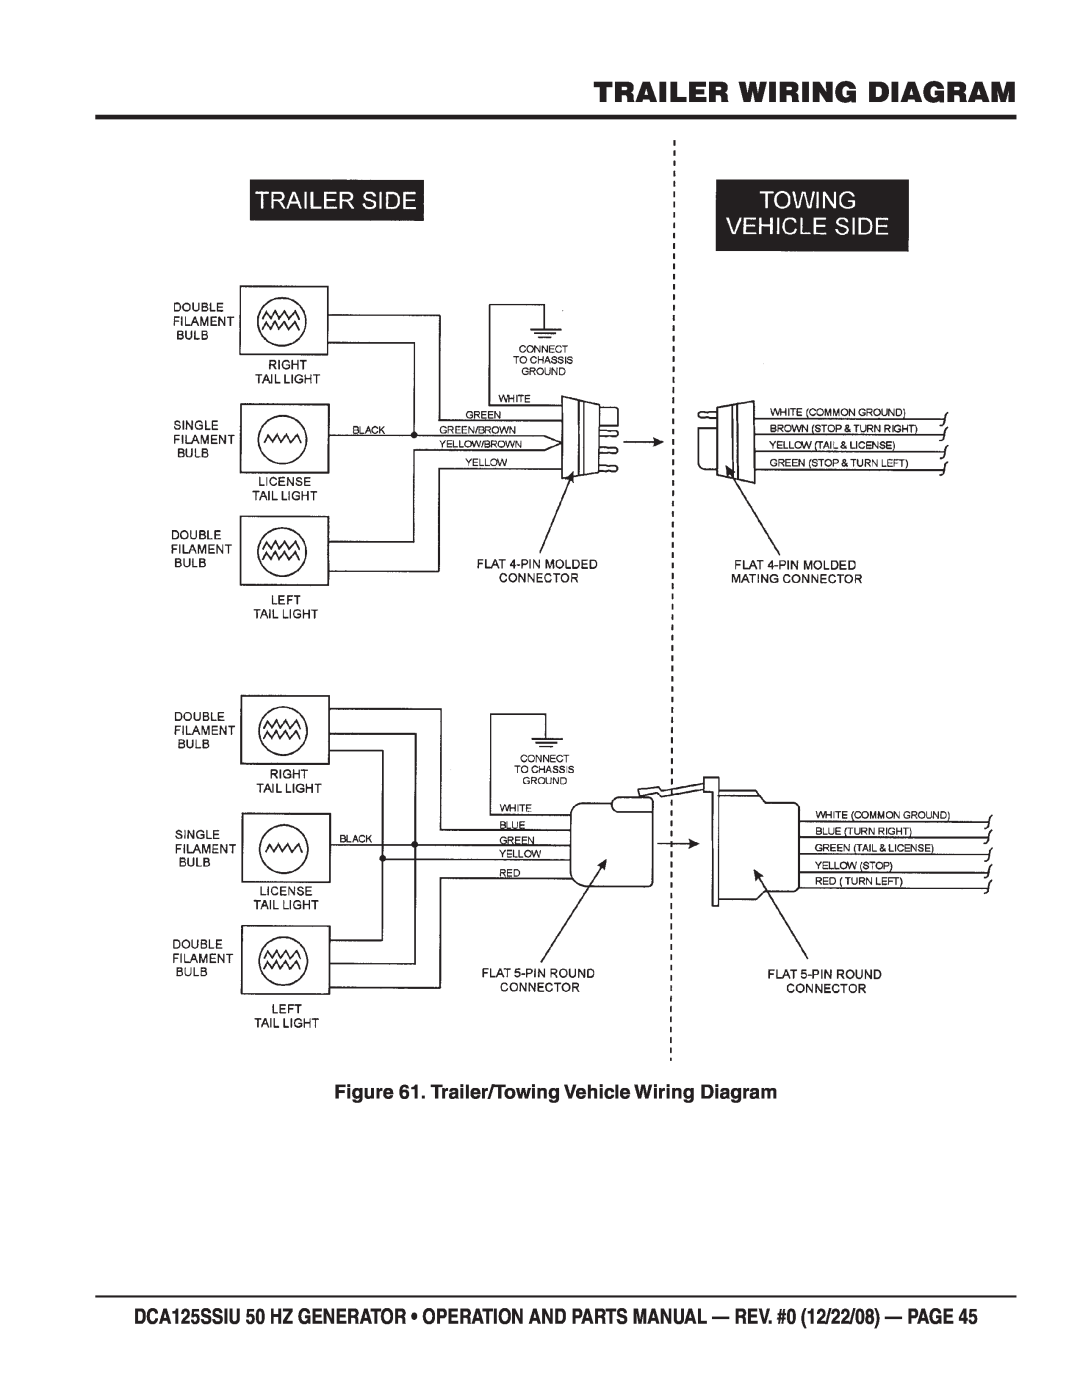 Multiquip DCA125SSIU manual Trailer Wiring Diagram, Trailer/Towing Vehicle Wiring Diagram 